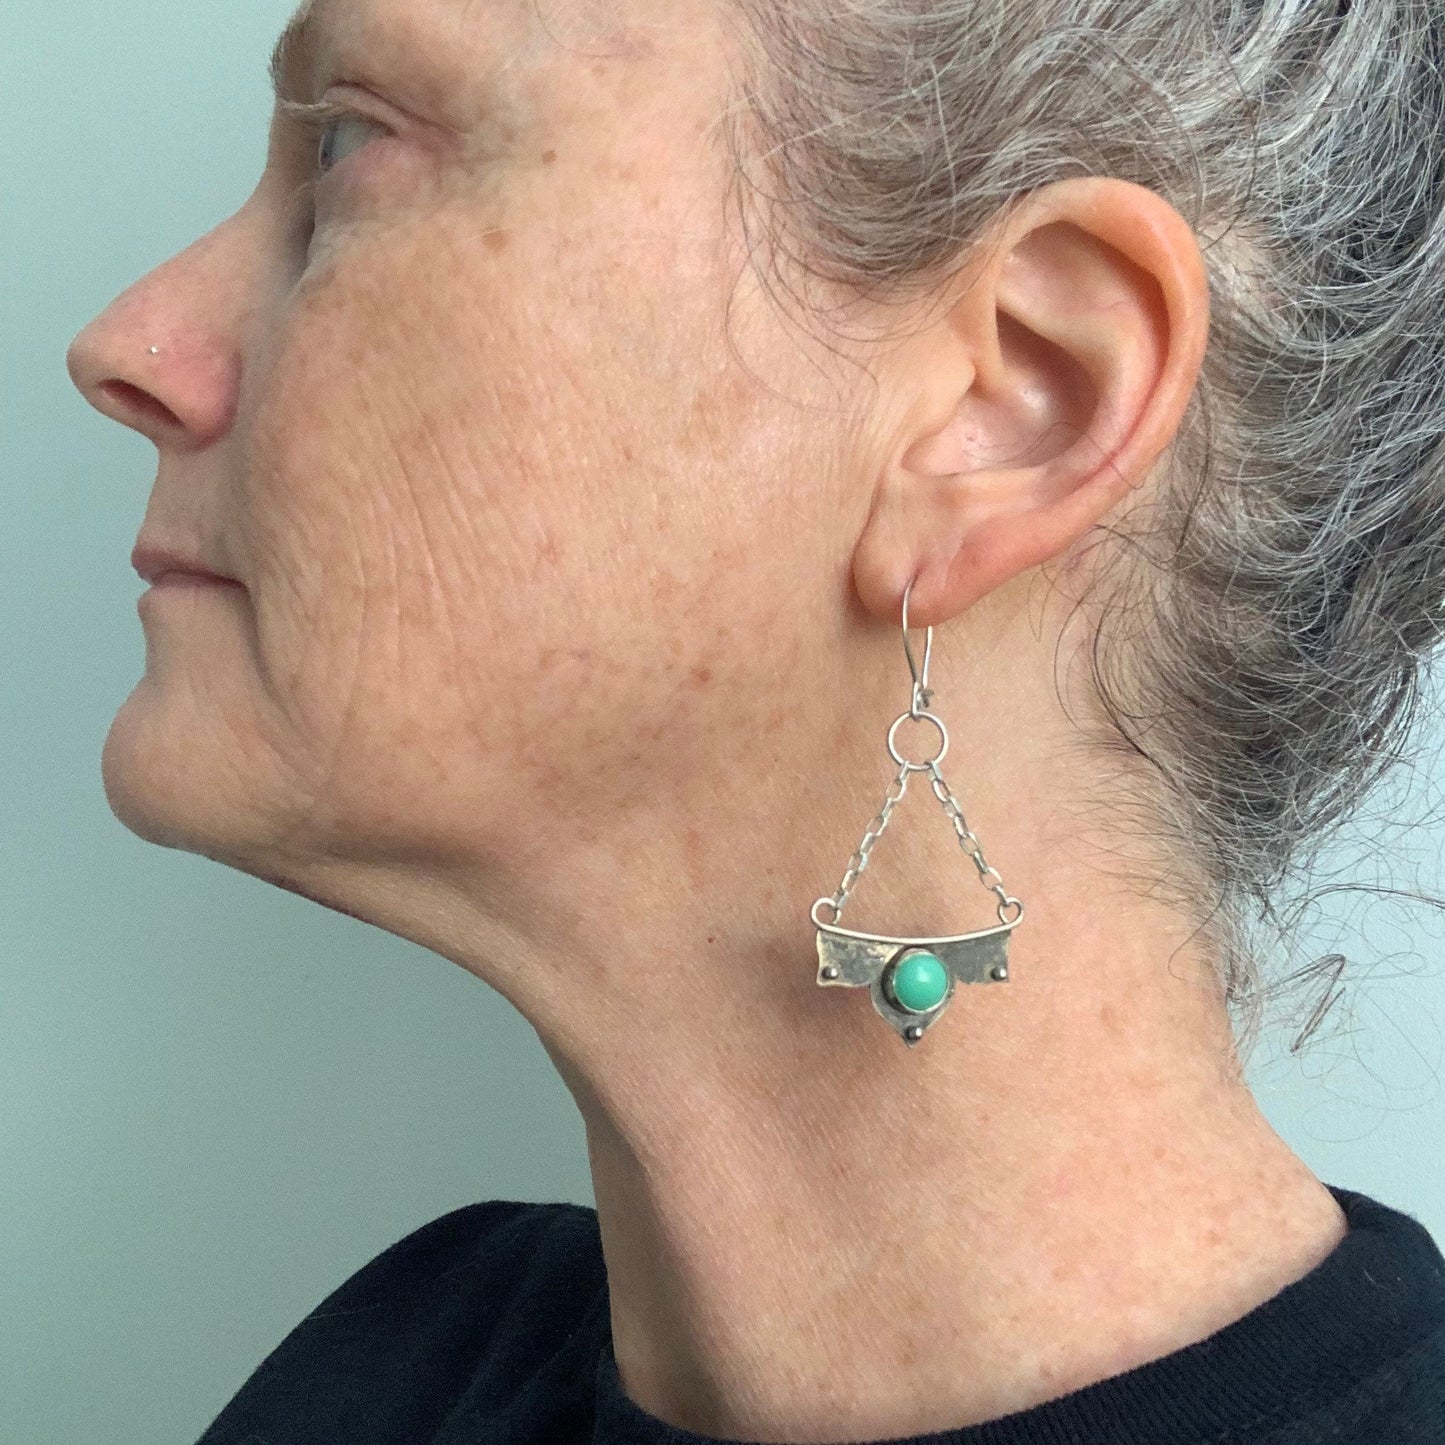 Gemstone dangle earrings - chandelier style earrings - mint chrysoprase stone - green gemstone in sterling setting - silver handmade jewelry